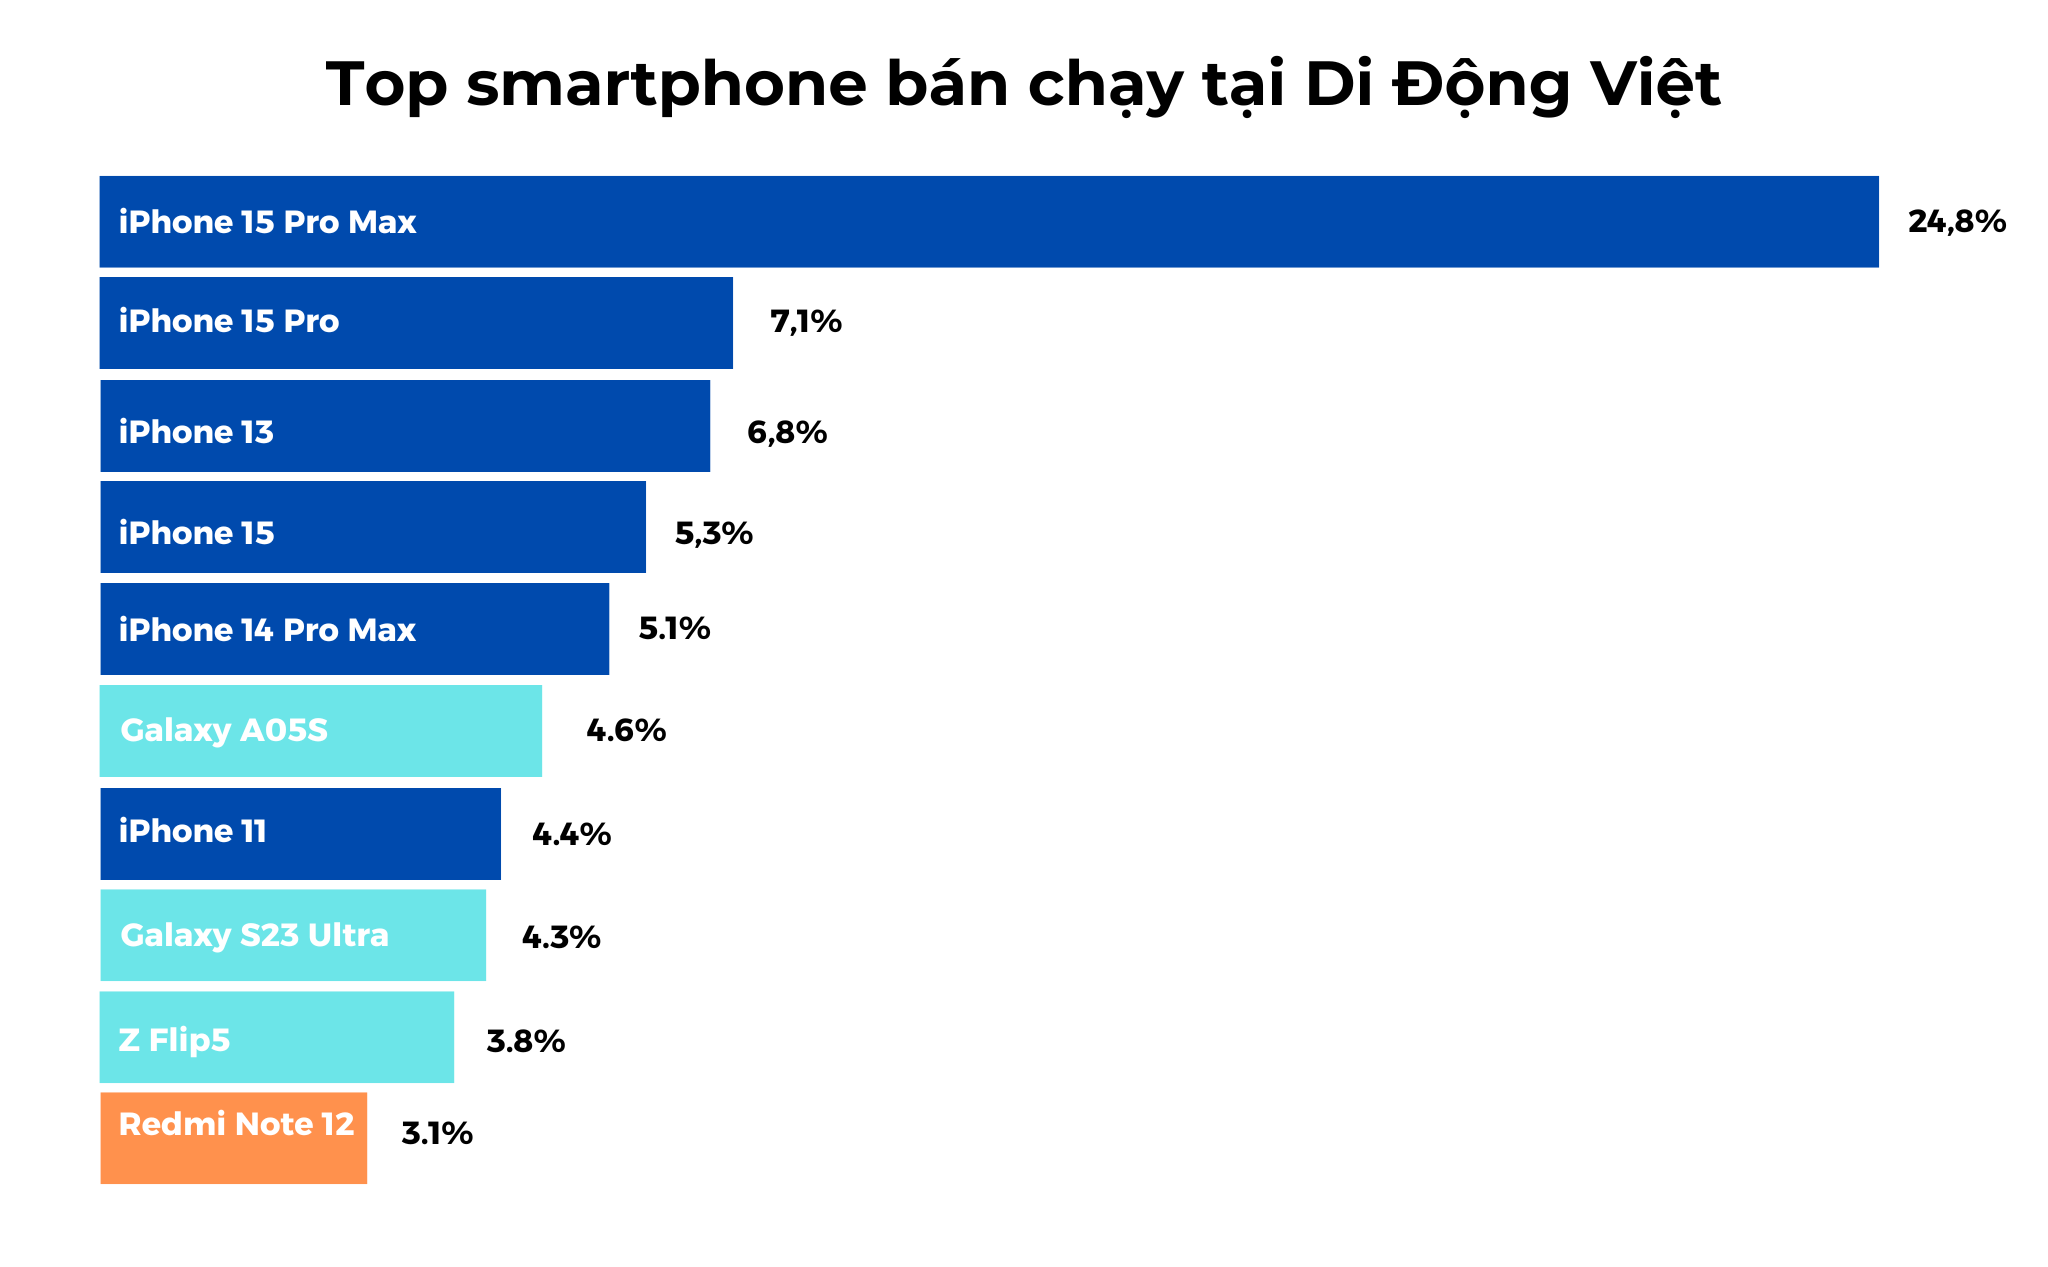 top-smartphone-ban-chay-tai-di-dong-viet-1701682174.png